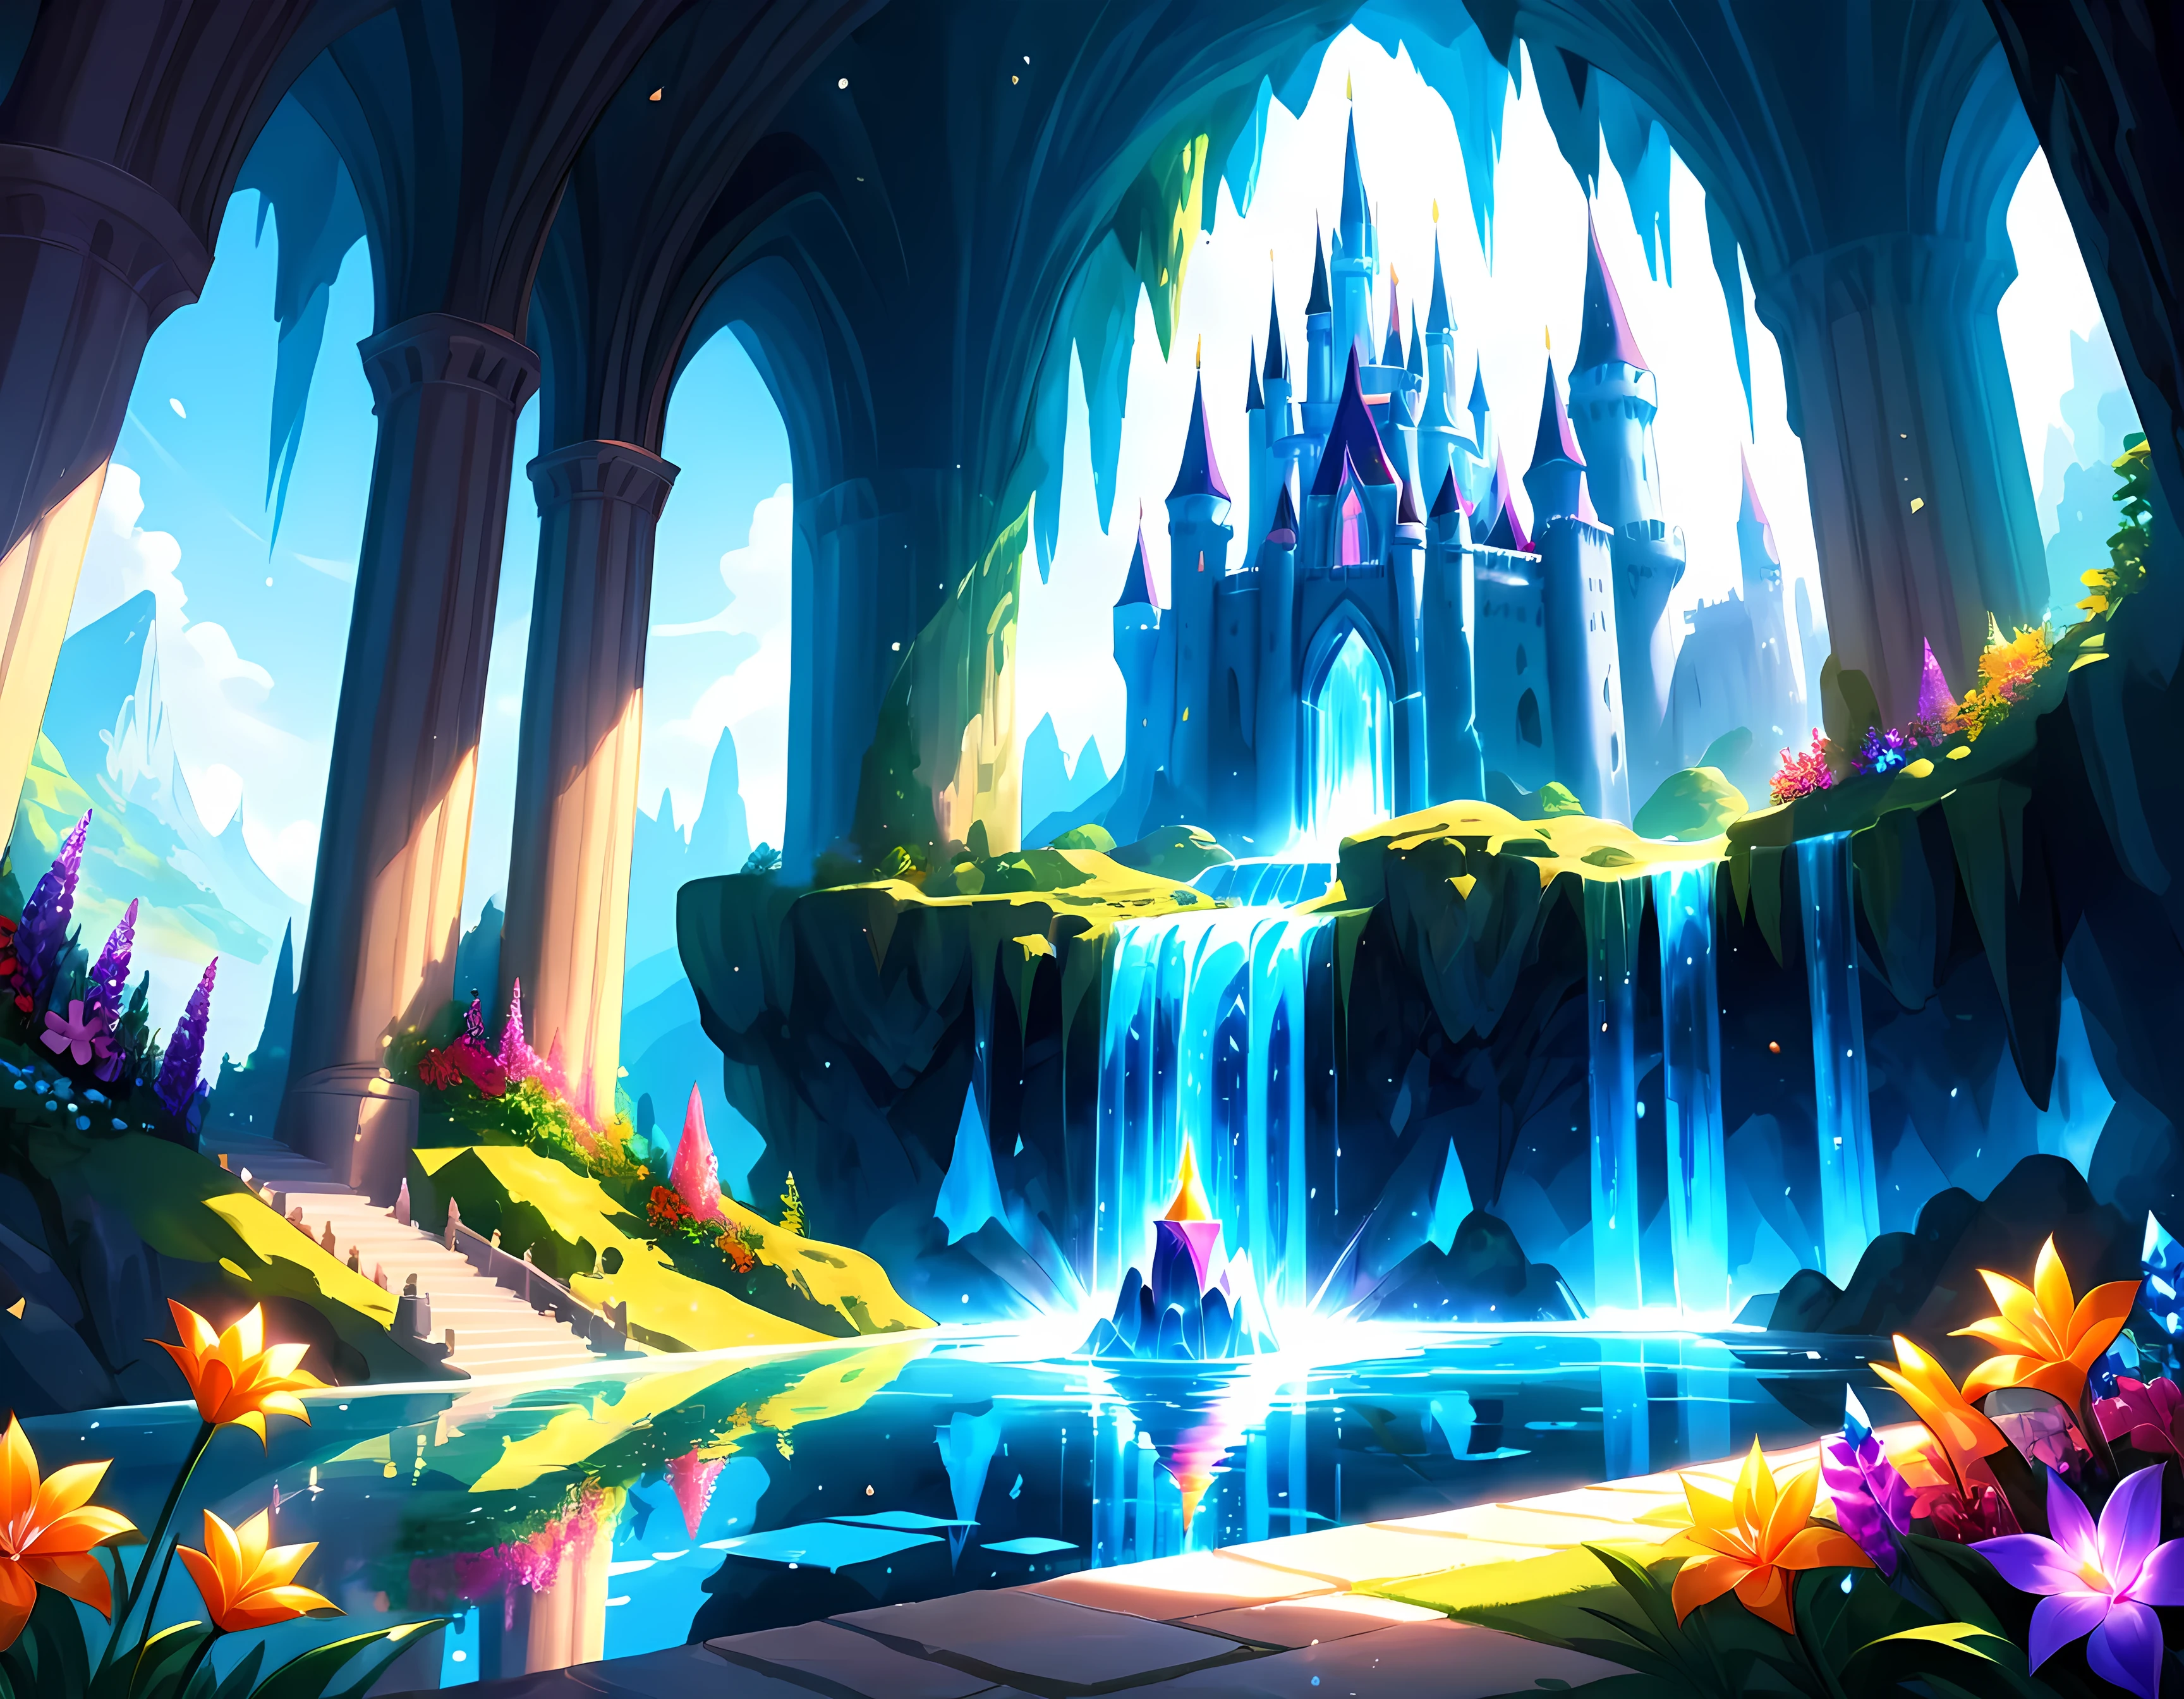 Desenho animado brilhante, dentro da caverna mística ao lado do abismo encontra-se um castelo mágico de cristal, feito inteiramente de cristais cintilantes de várias cores, refletindo a luz do sol em uma exibição deslumbrante, ao redor do castelo há jardins vibrantes repletos de flores exóticas e cachoeiras cintilantes, Obra-prima em resolução máxima de 16K, Excelente qualidade